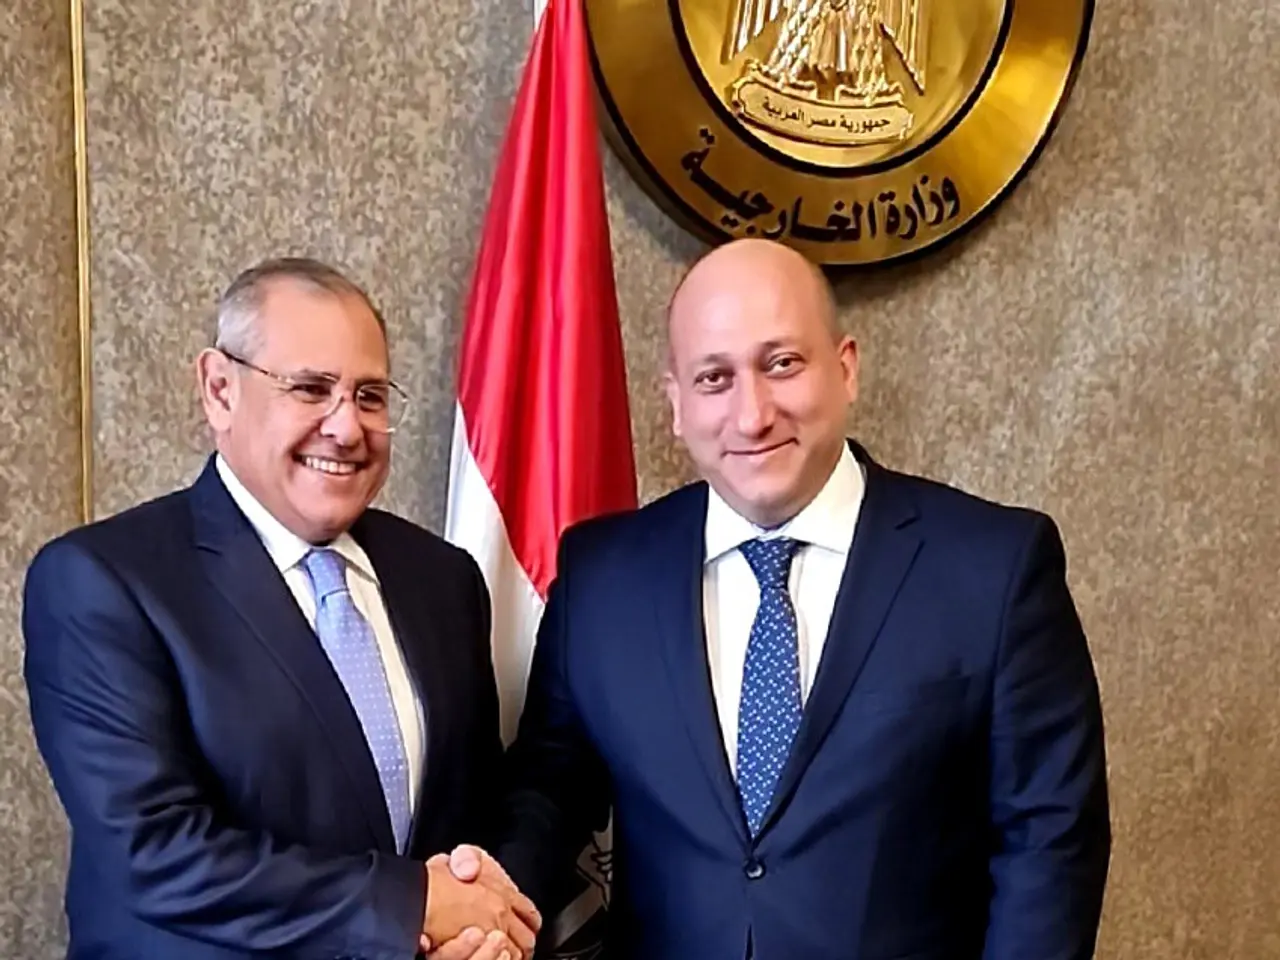 الجولة السابعة من المشاورات السياسية الثنائية بين وزارتي خارجية جورجيا وجمهورية مصر العربية 1